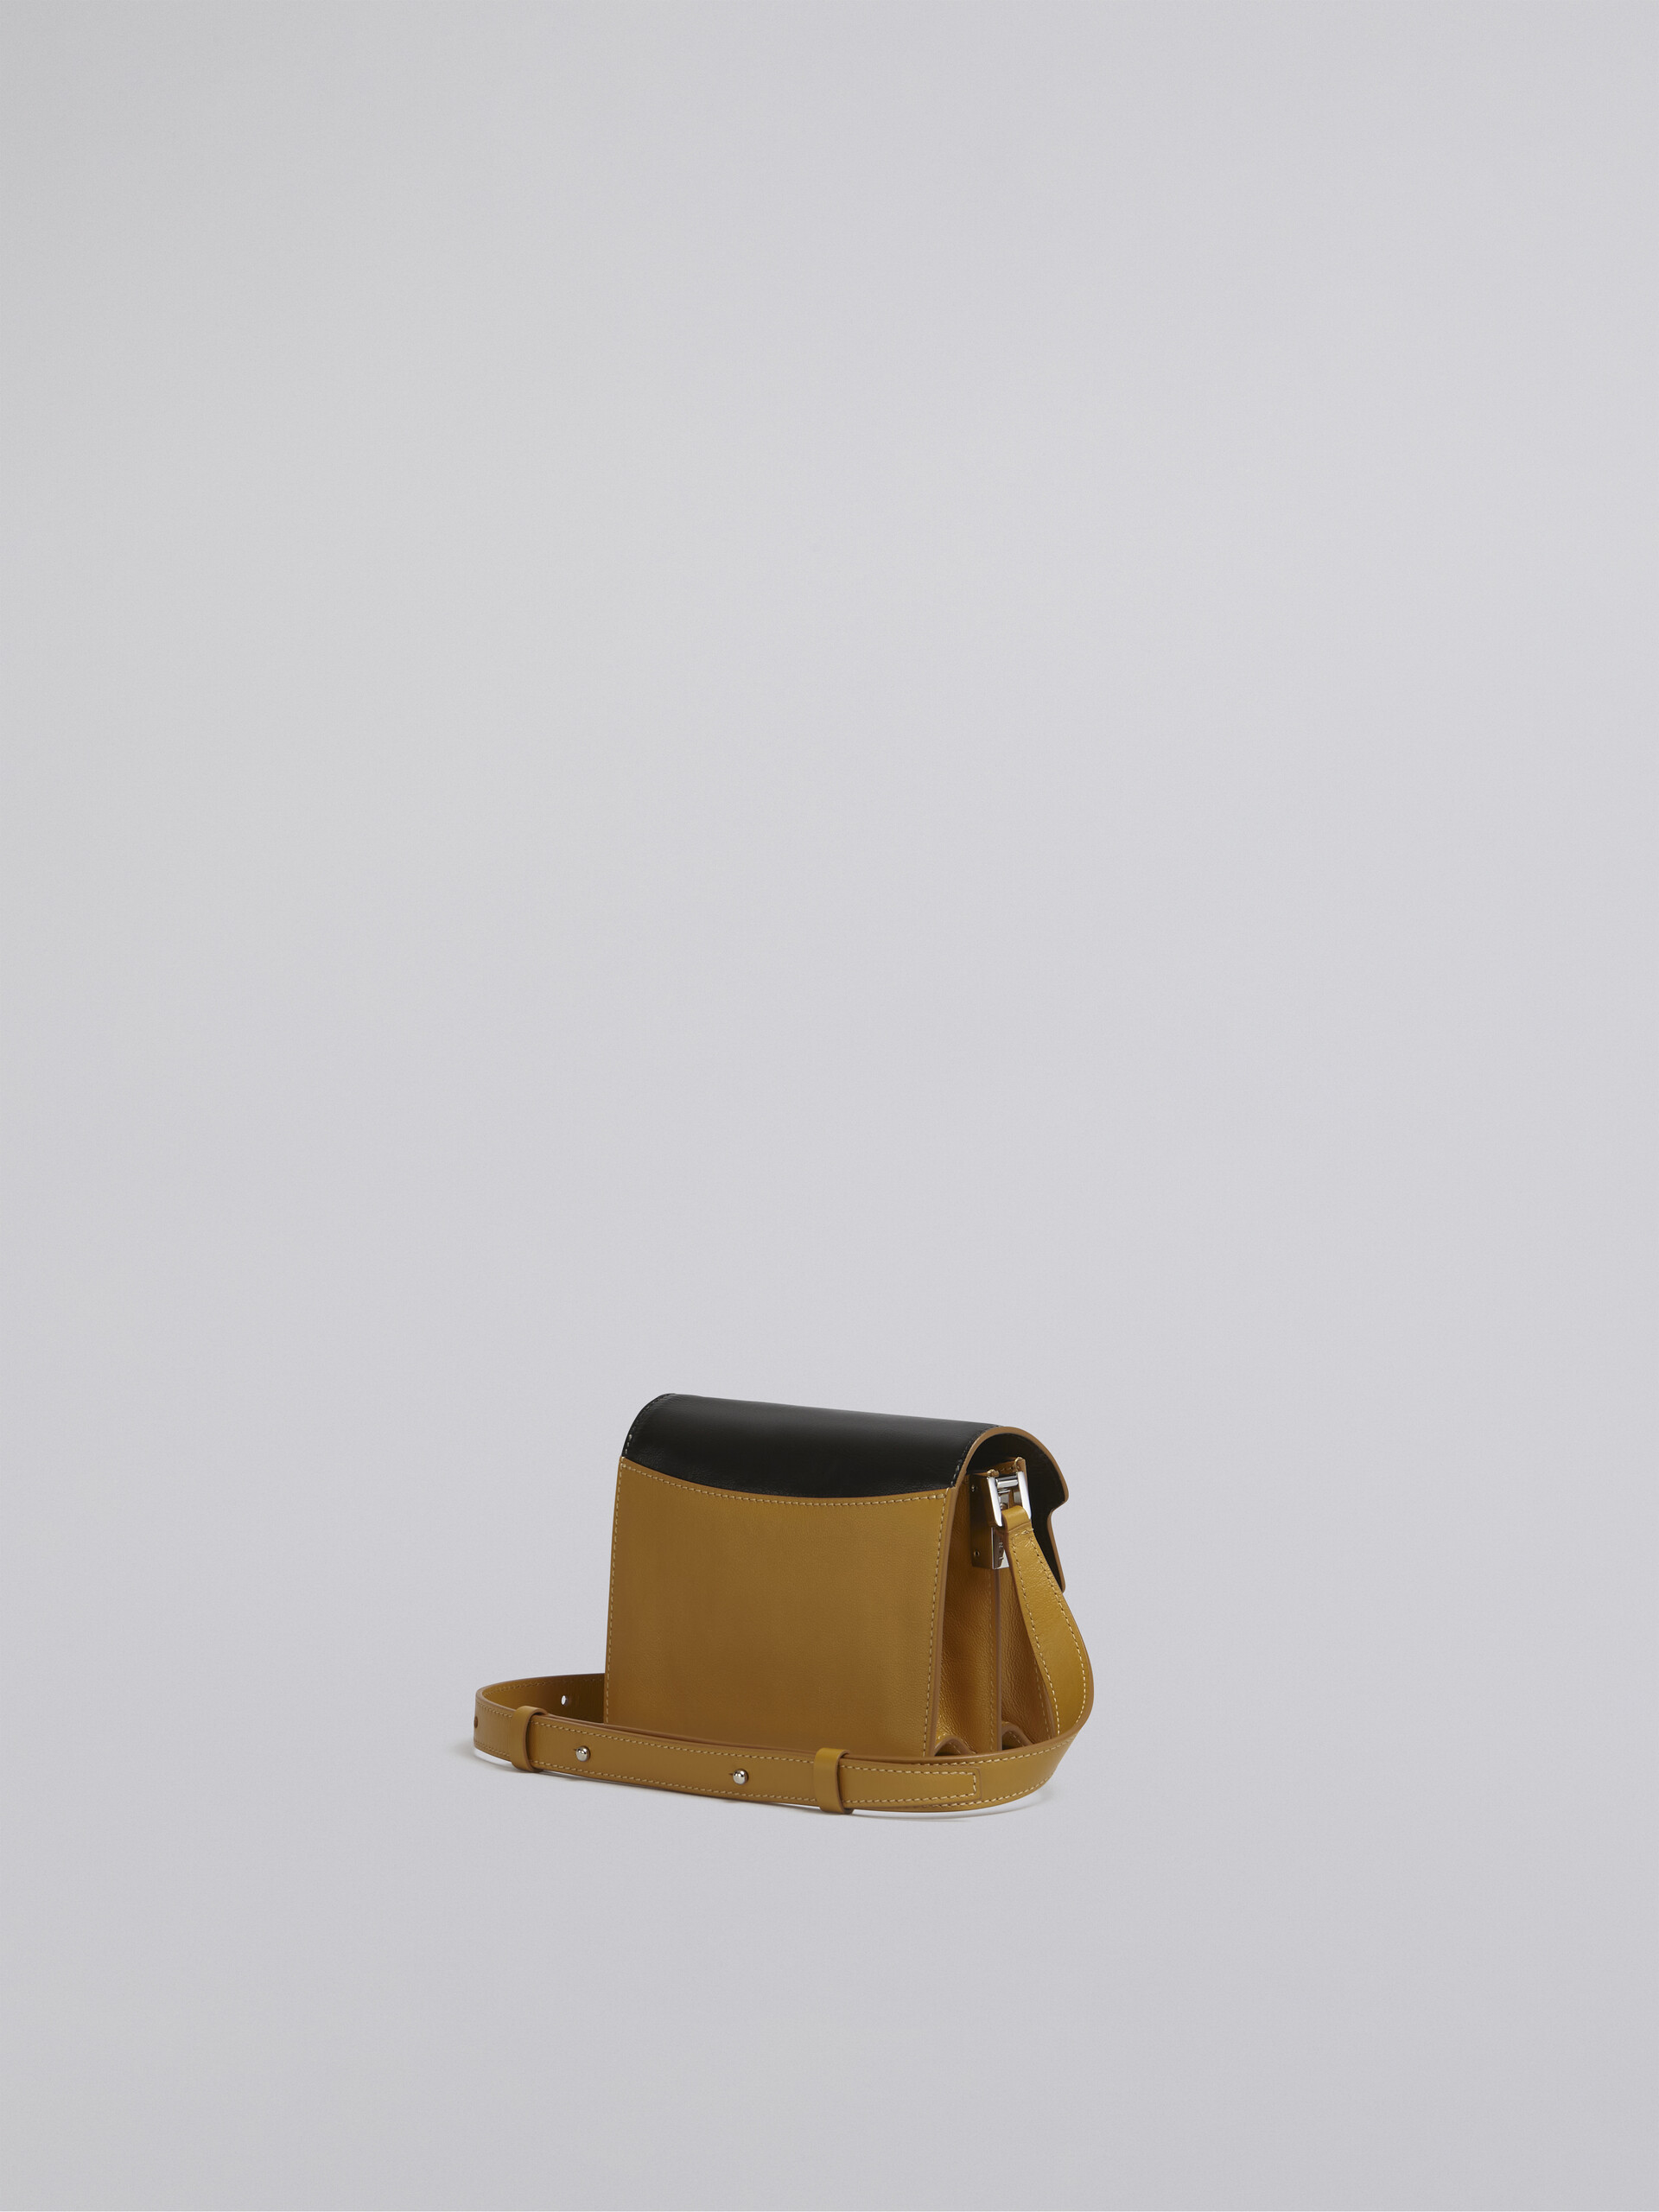 TRUNK SOFT bag mini in pelle gialla e nera - Borse a spalla - Image 3